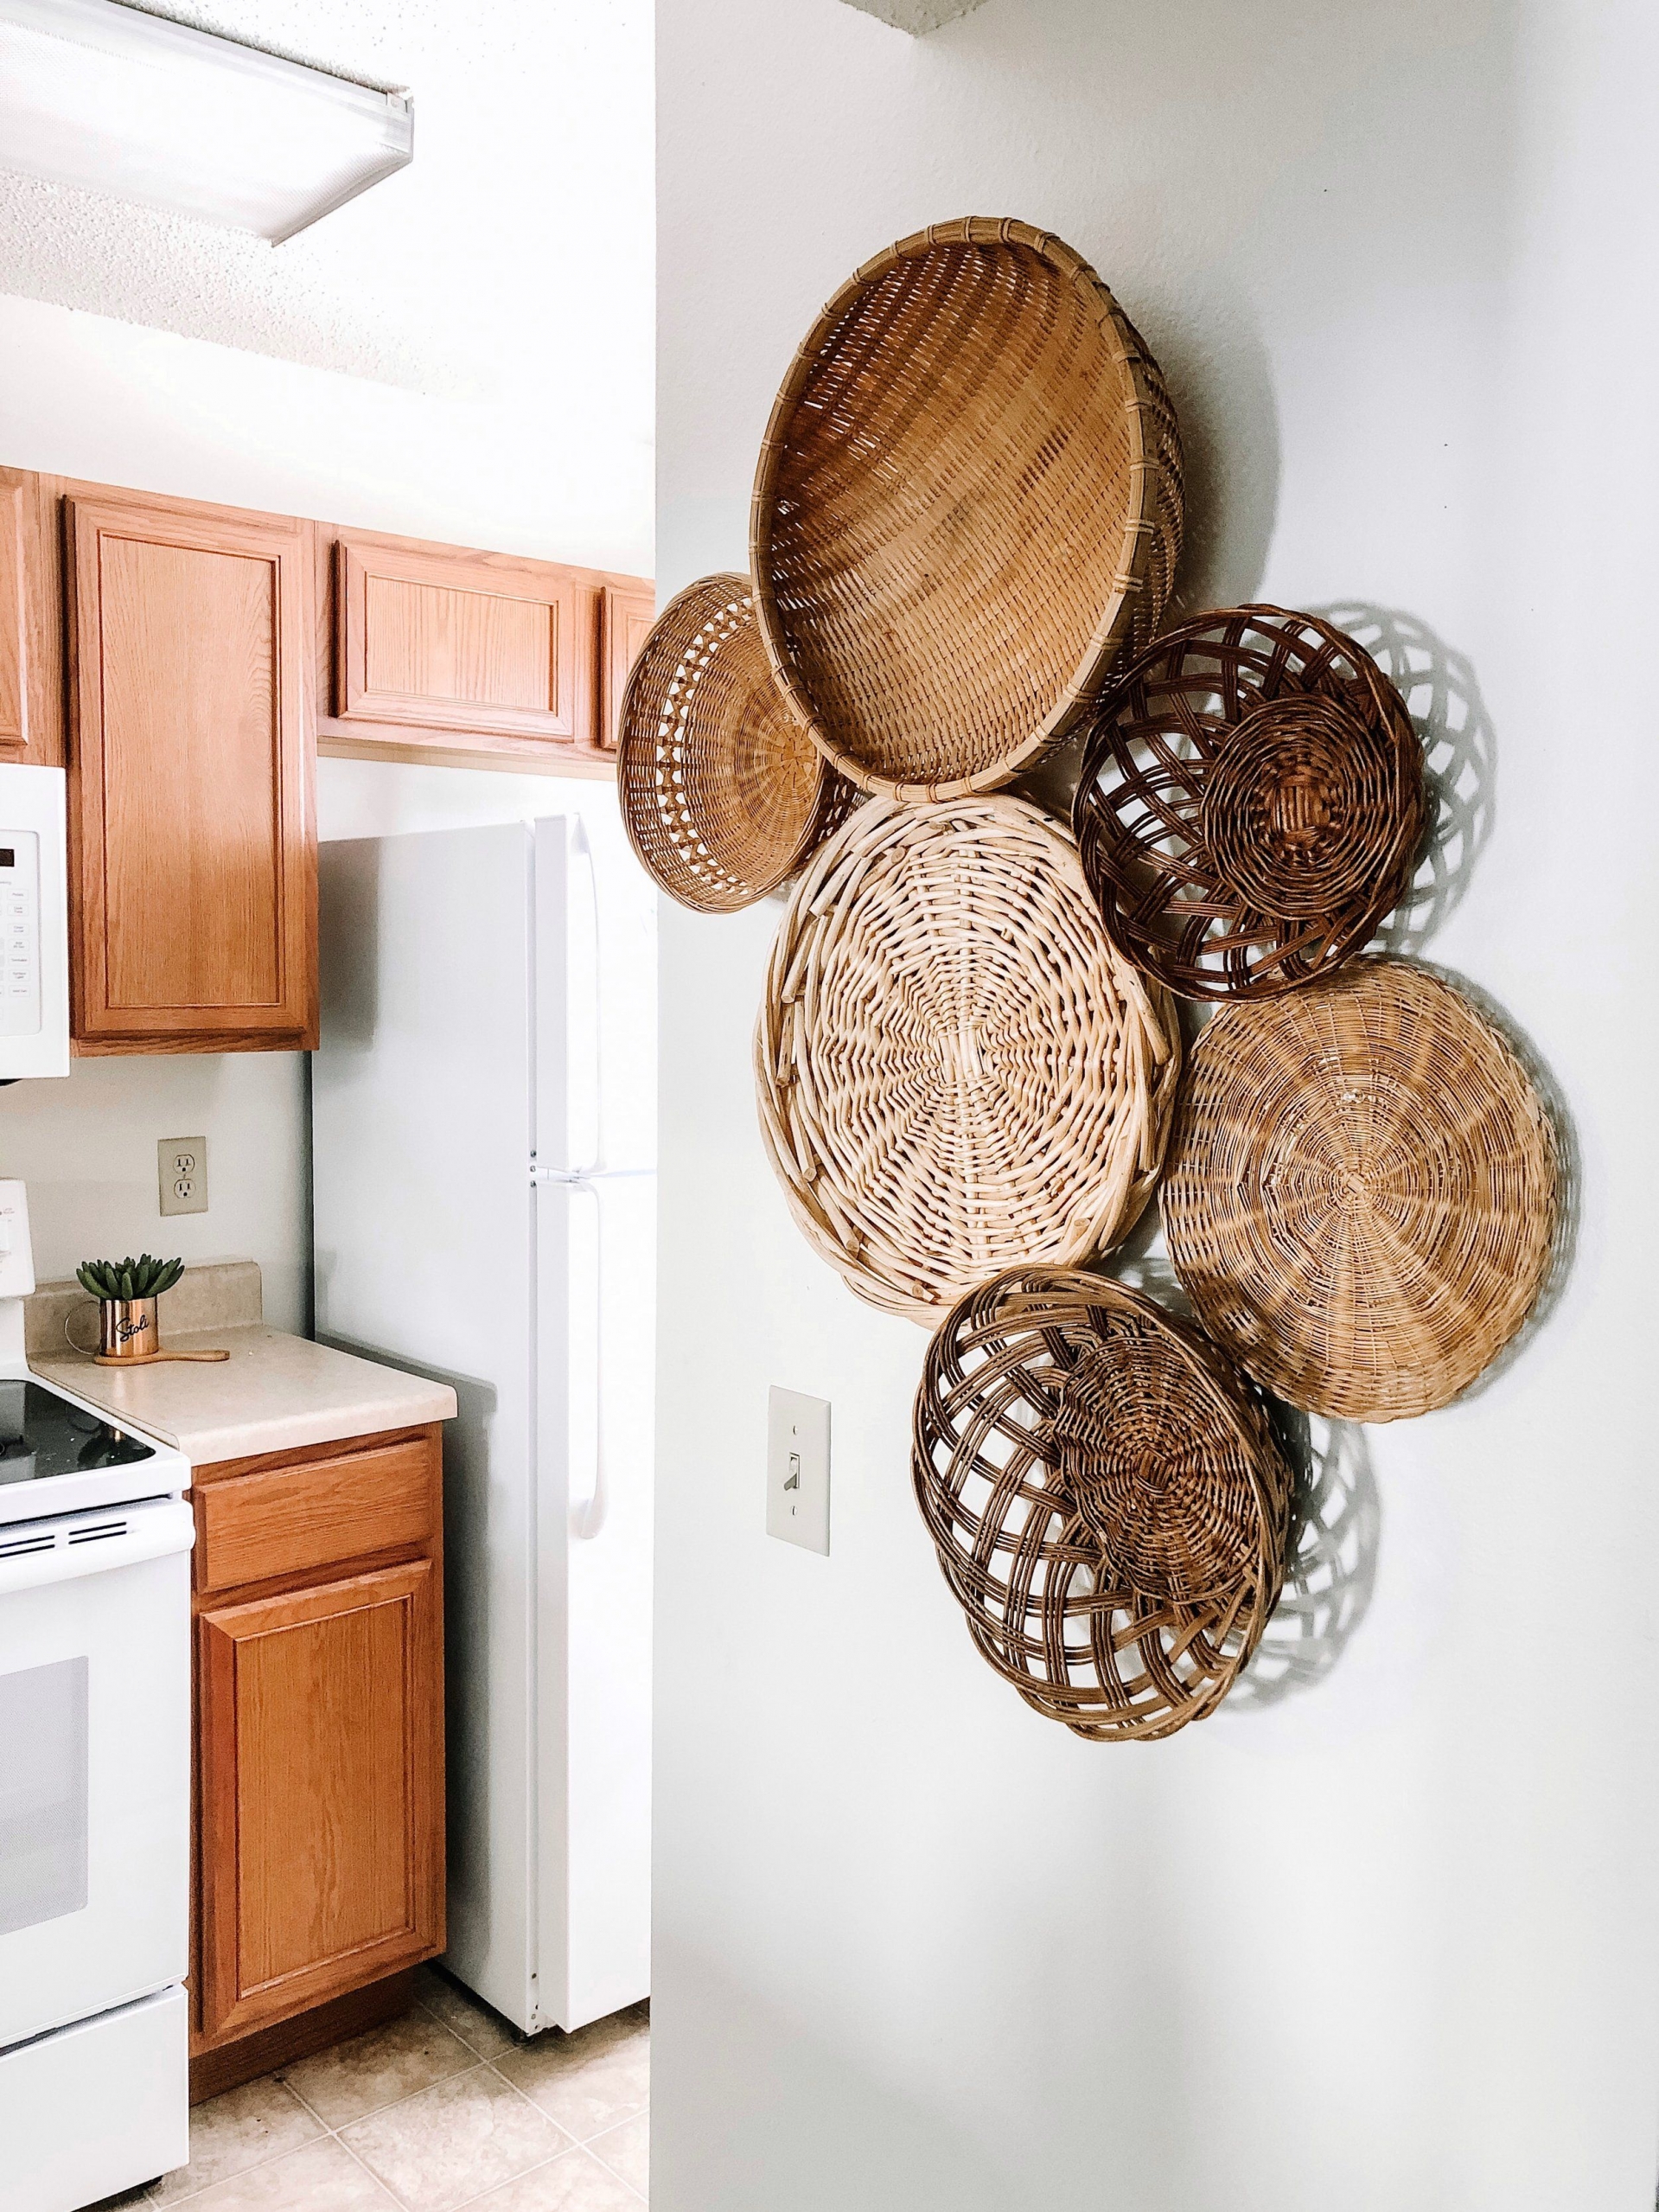 Đối với khu vực nấu nướng thì bức tường trang trí bằng rổ rá tre rất phù hợp với chủ đề bếp núc rồi đúng không nào?